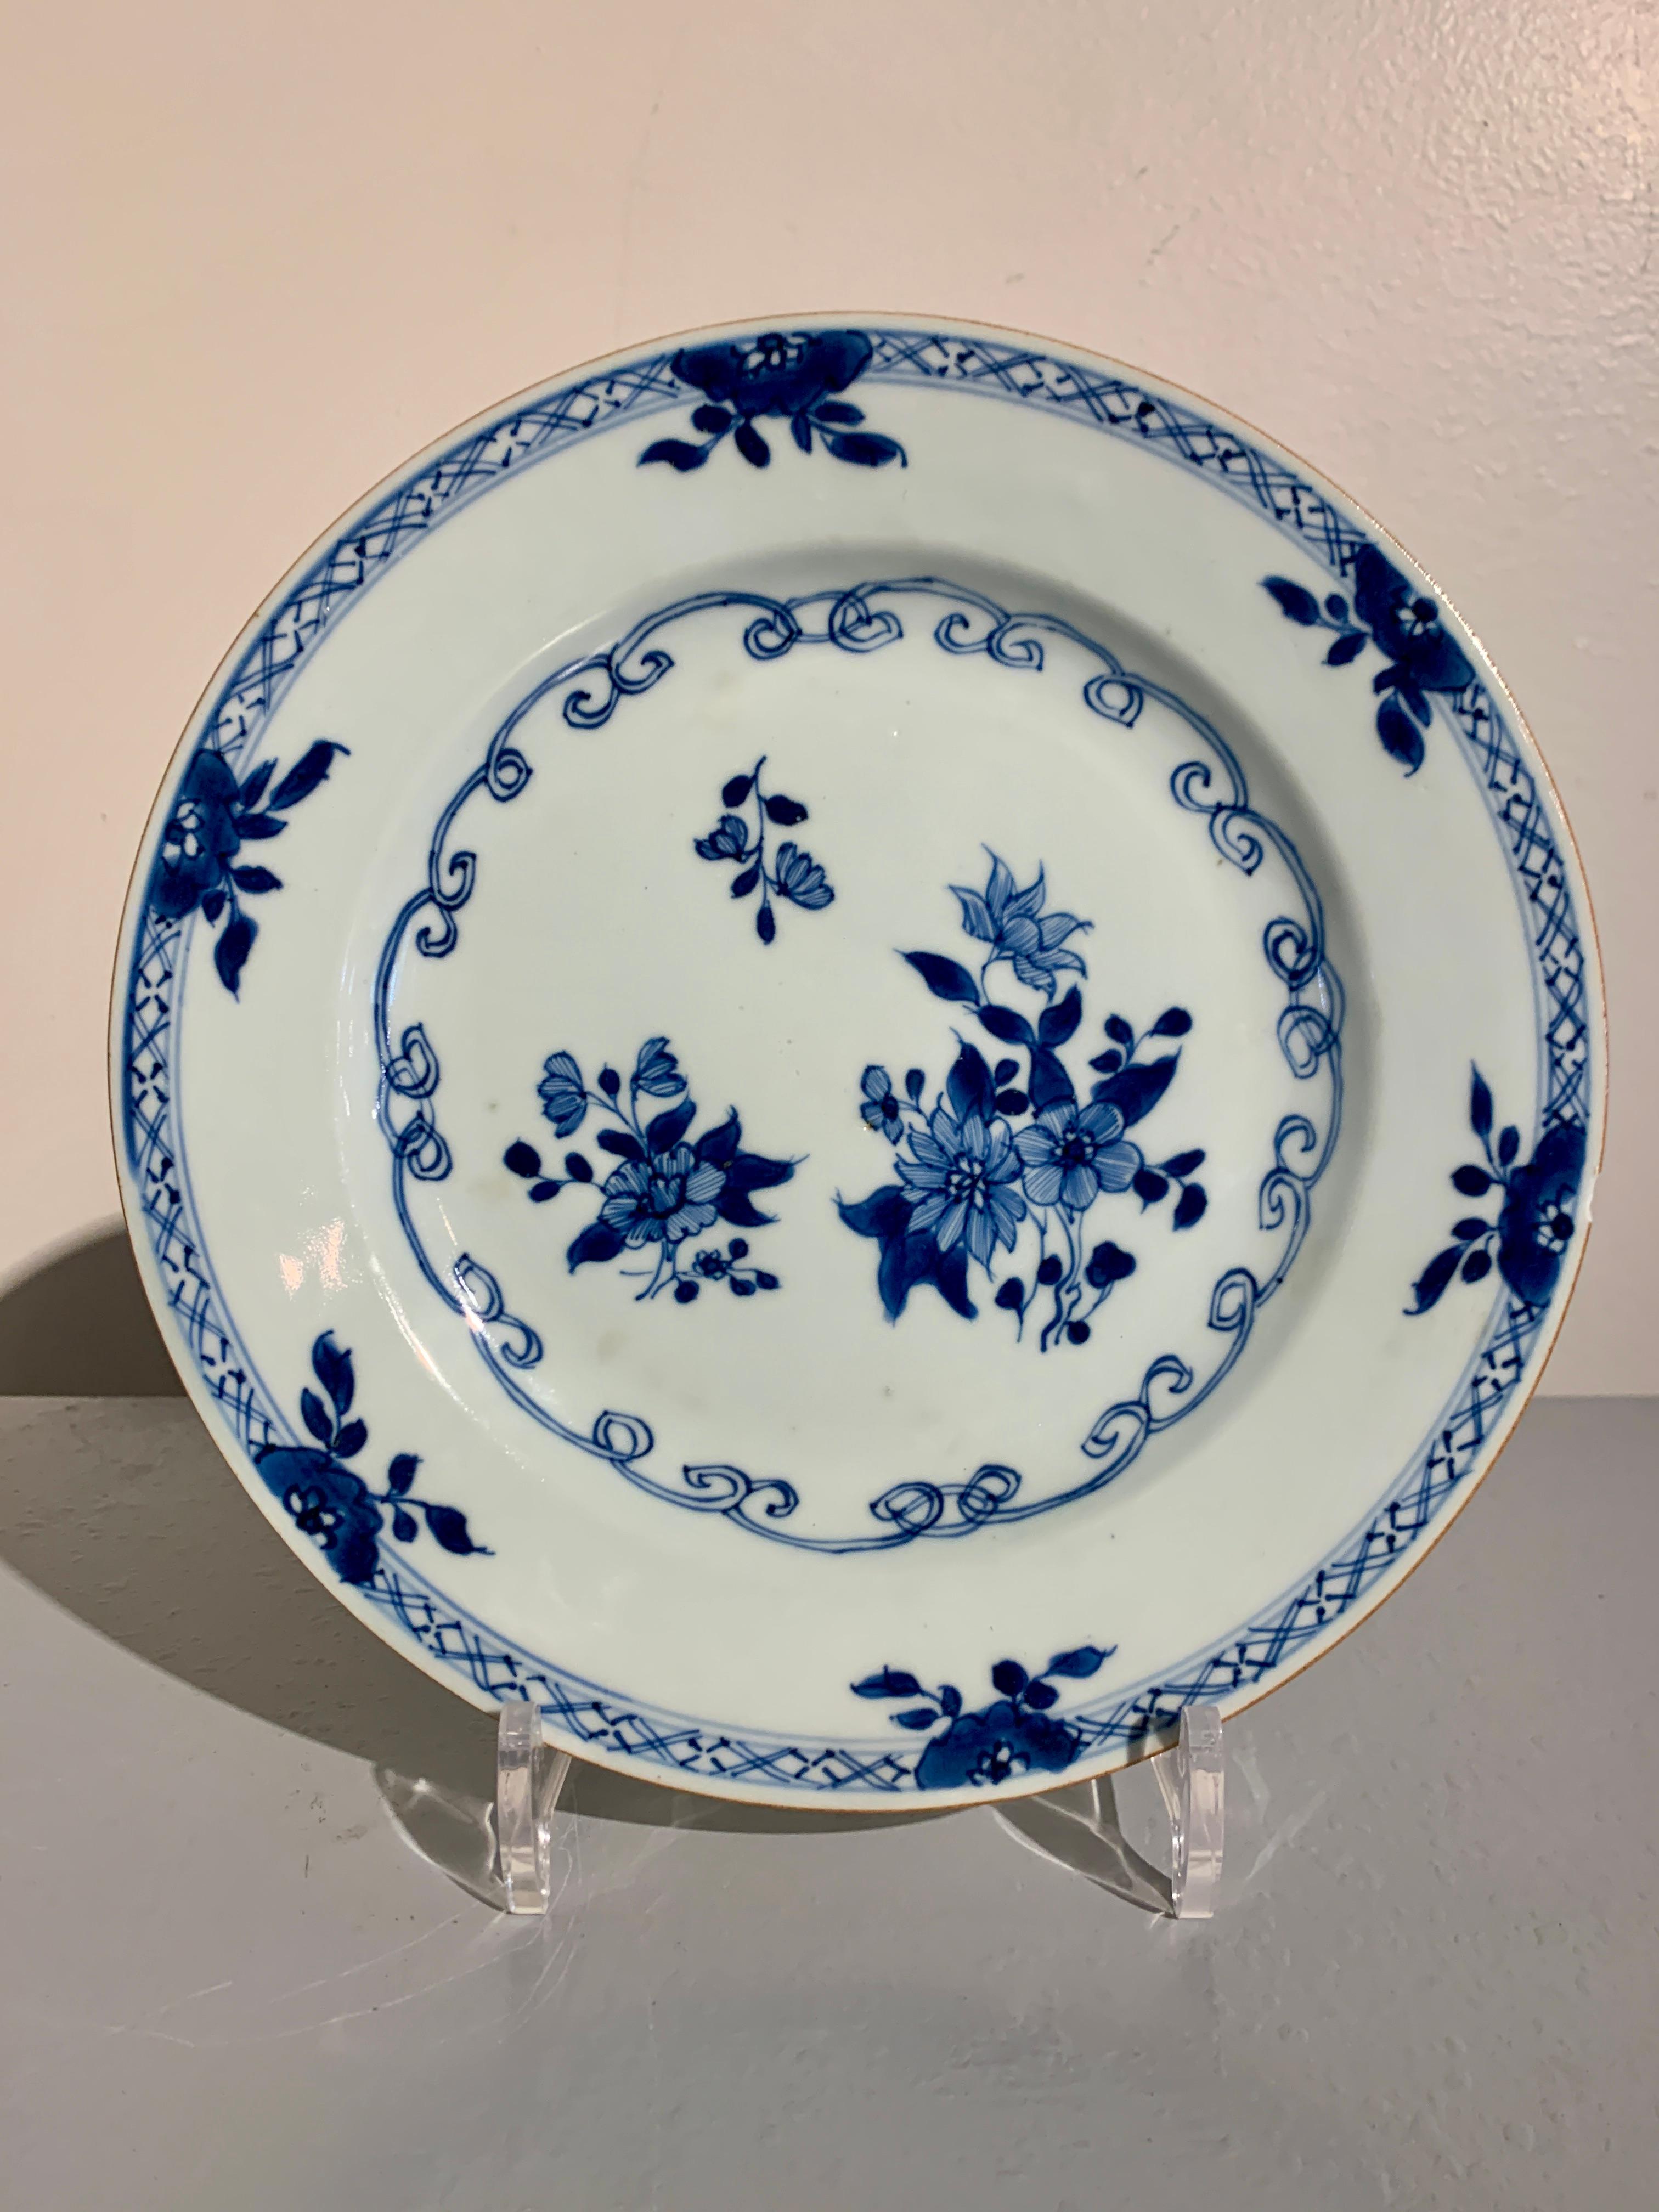 Eine schöne Reihe von zehn (10) chinesischen Export blau und weiß Porzellanteller, Qing-Dynastie, Ende des 18.

Die Teller haben einen Durchmesser von 9